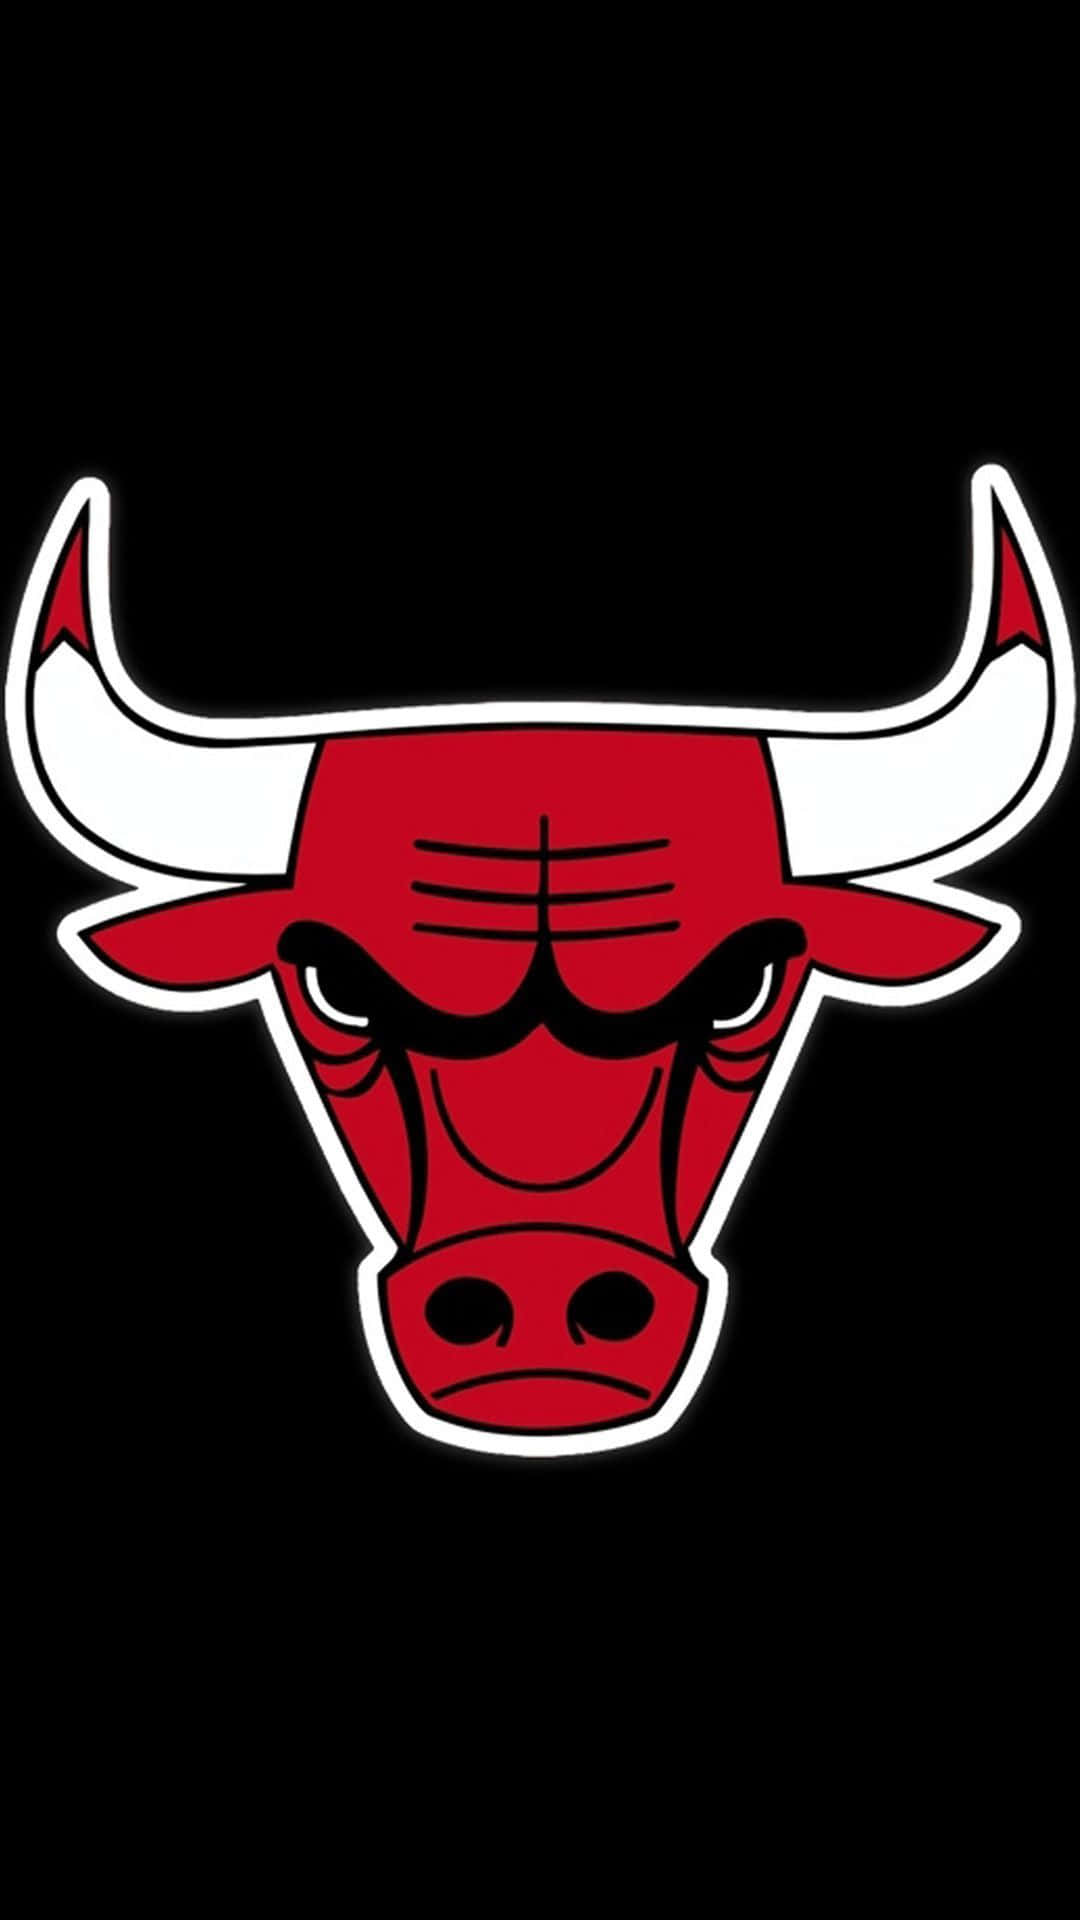 Mostrail Tuo Orgoglio Per I Chicago Bulls Con Questo Design Esclusivo Per Iphone! Sfondo